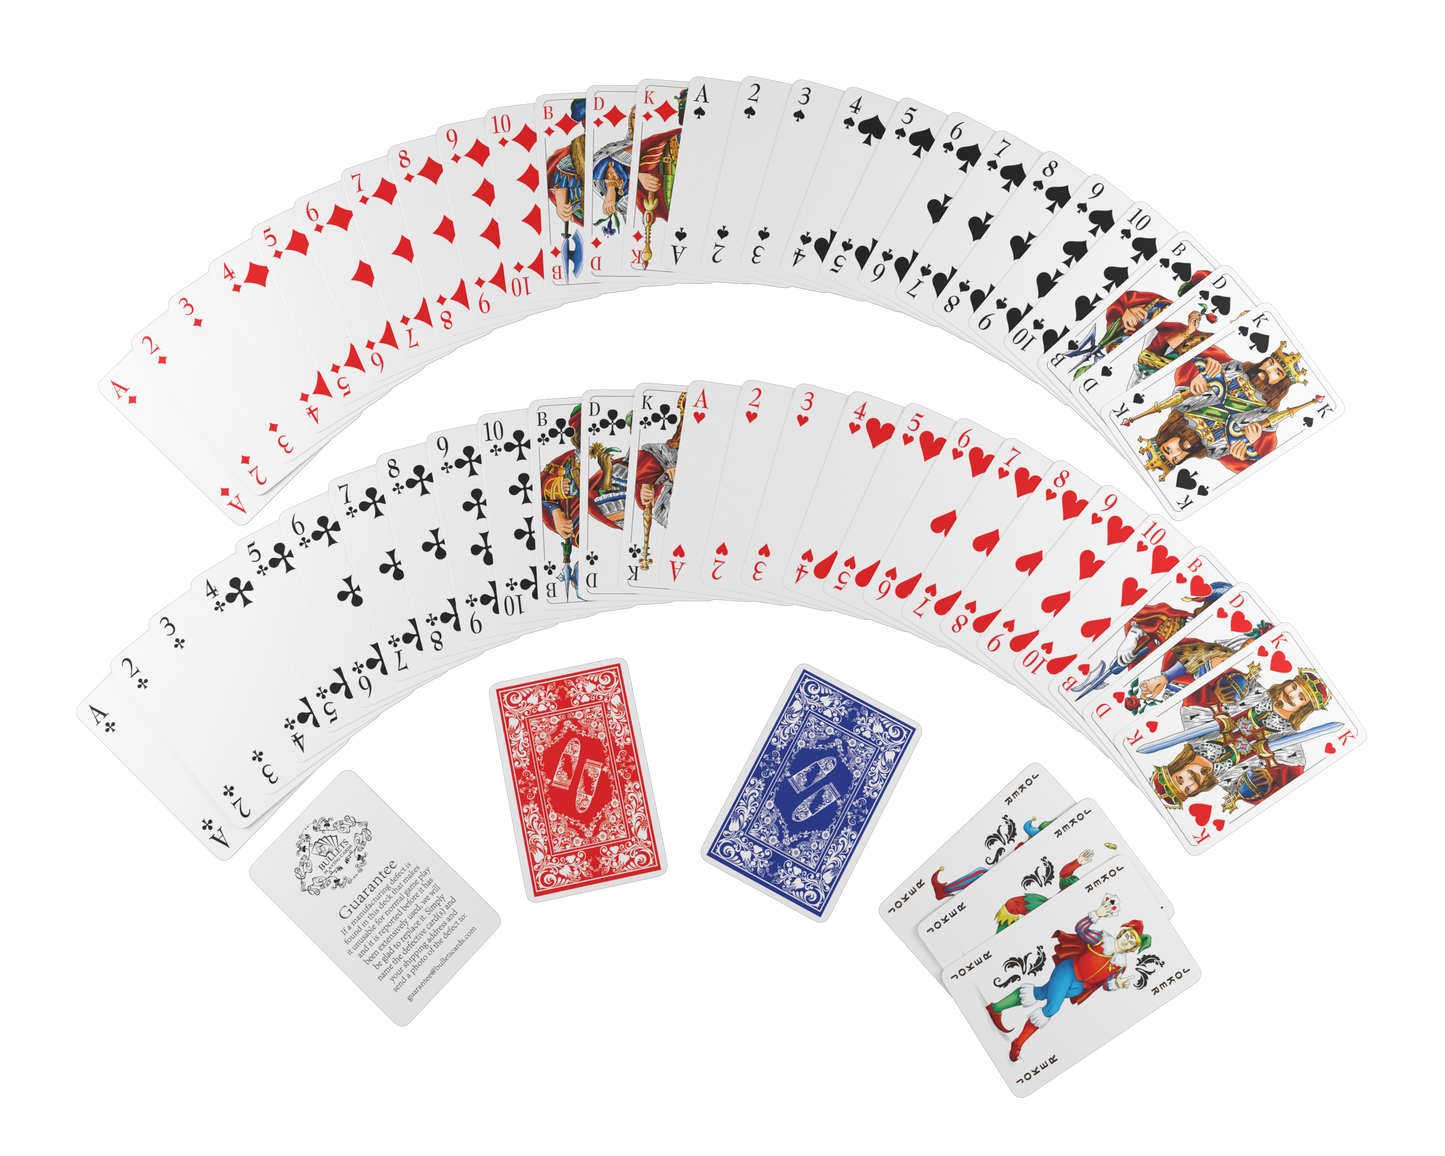 Rommé Set in Kunstleder-Etui, inklusive Plastik Spielkarten, Spielregeln mit 15 Rommee-Varianten, Kurzregeln, Stift und Block